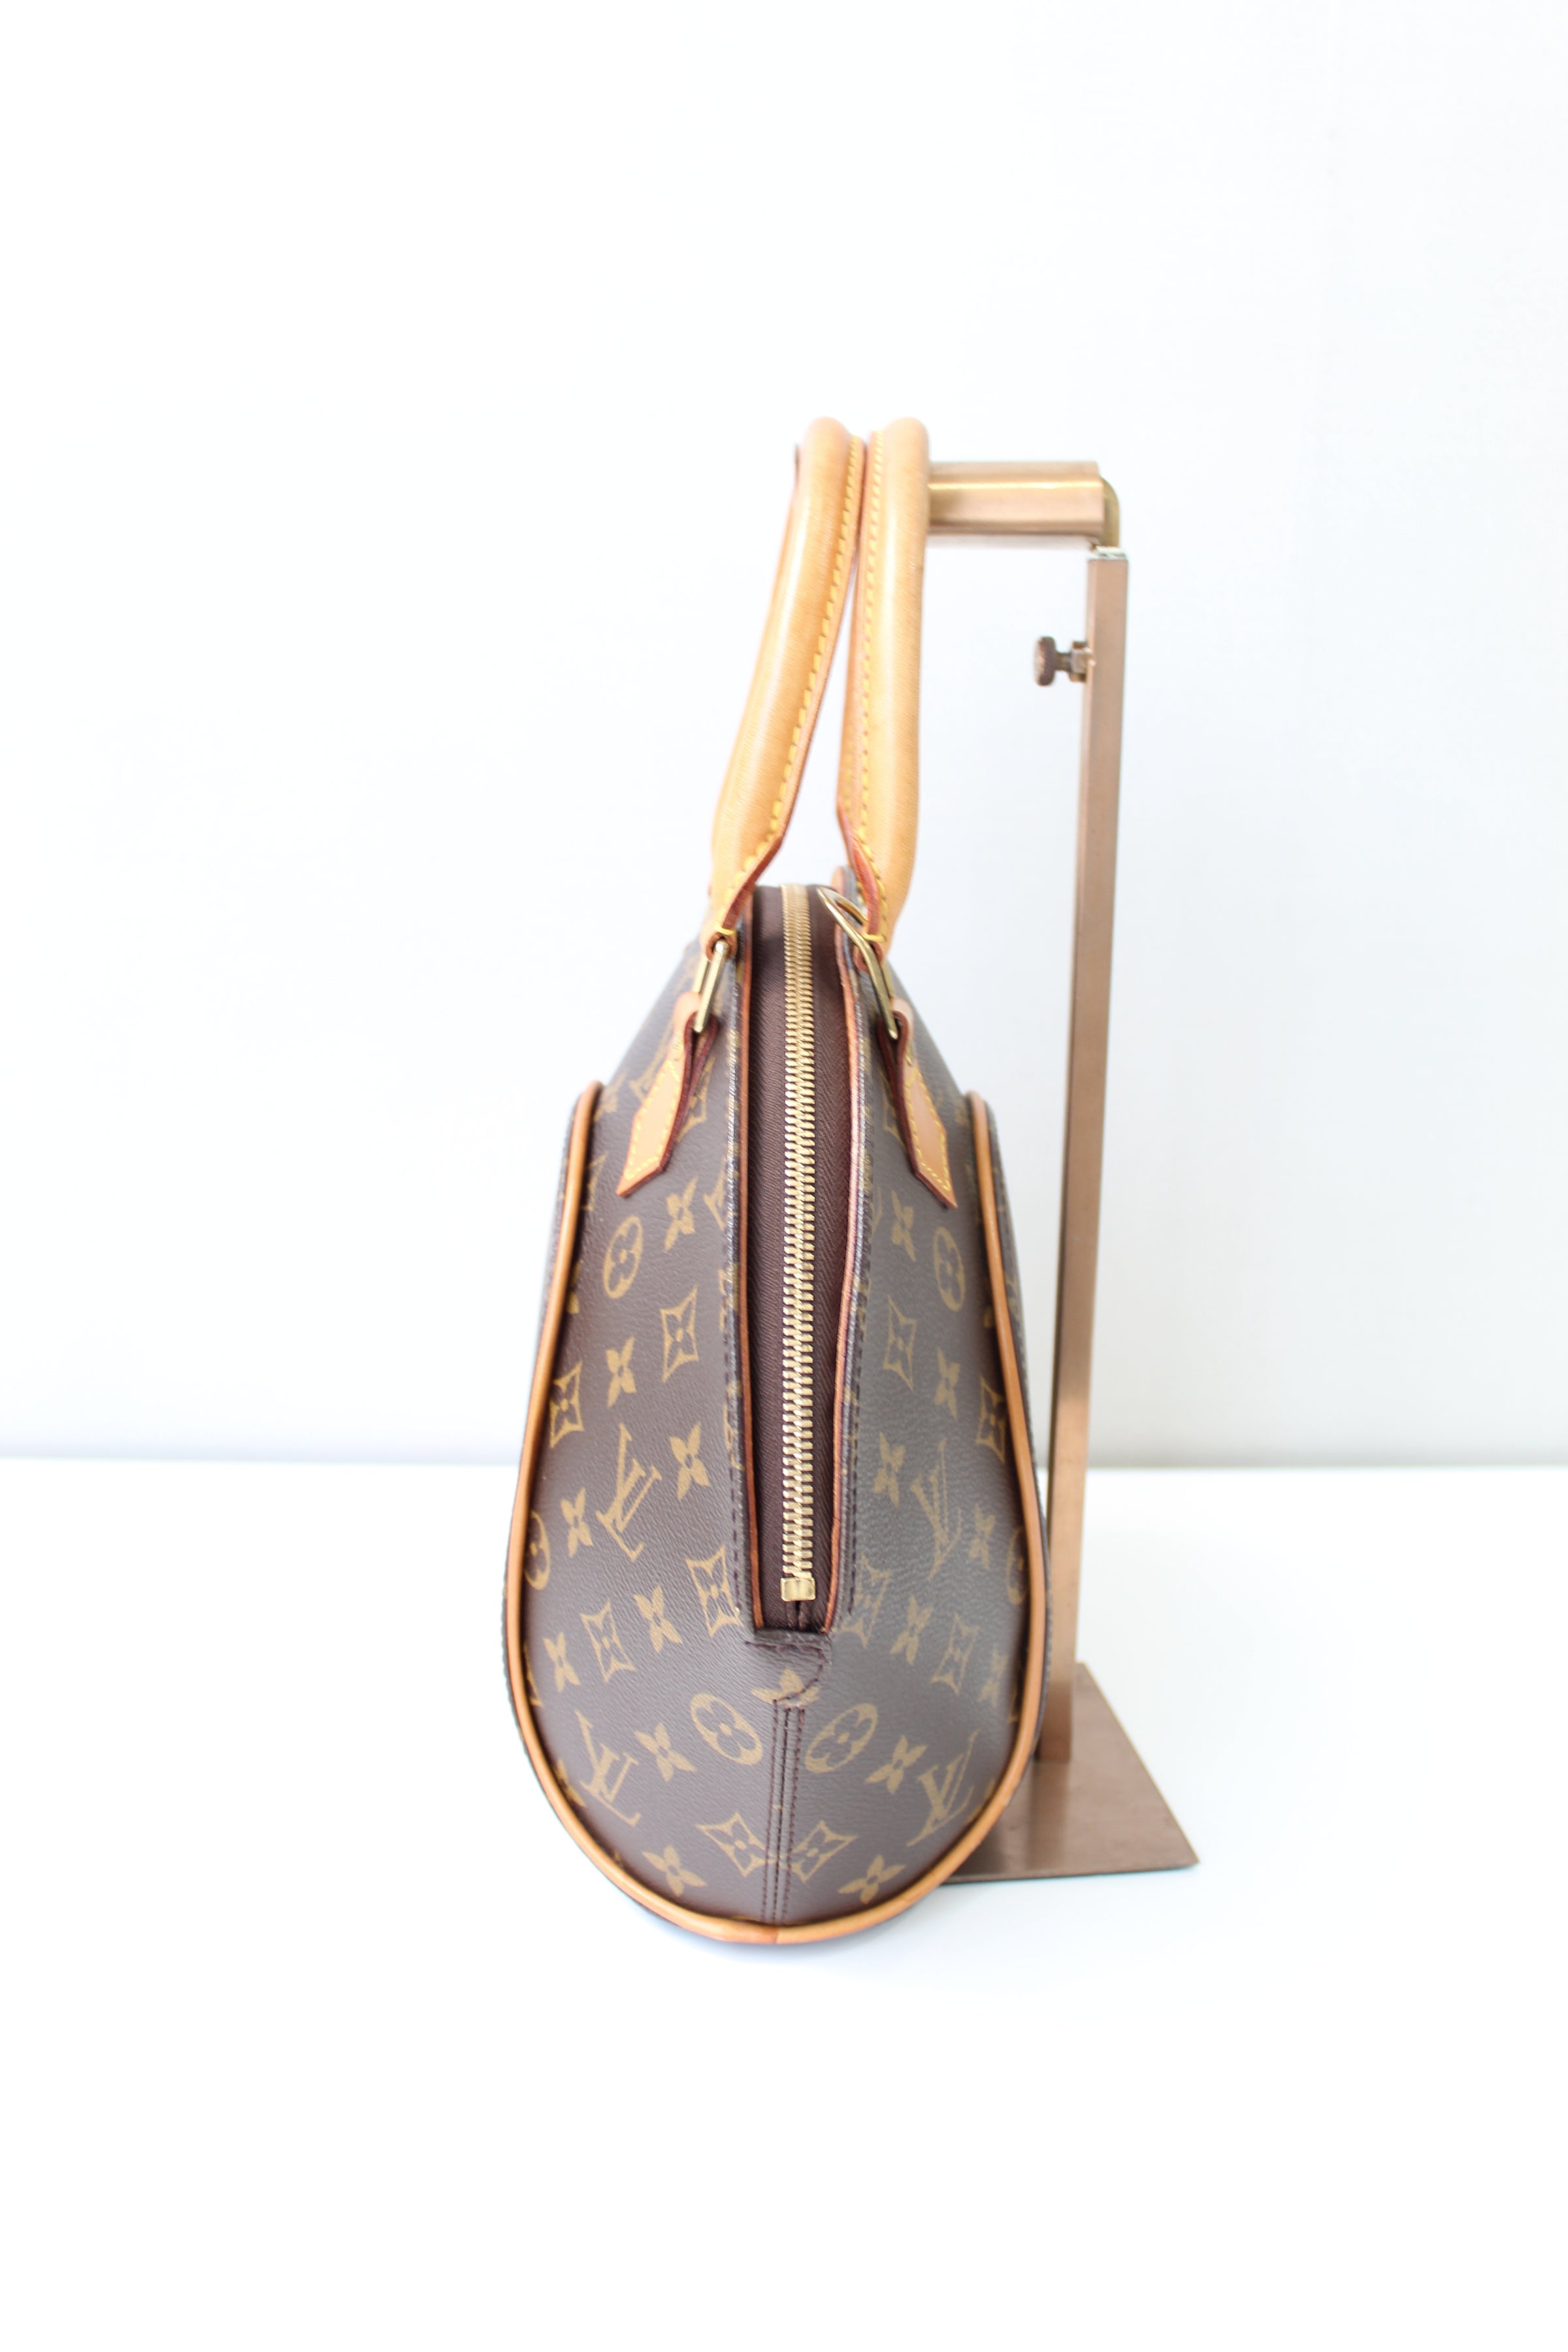 Louis Vuitton Ellipse Bag Monogram Canvas Pm Auction